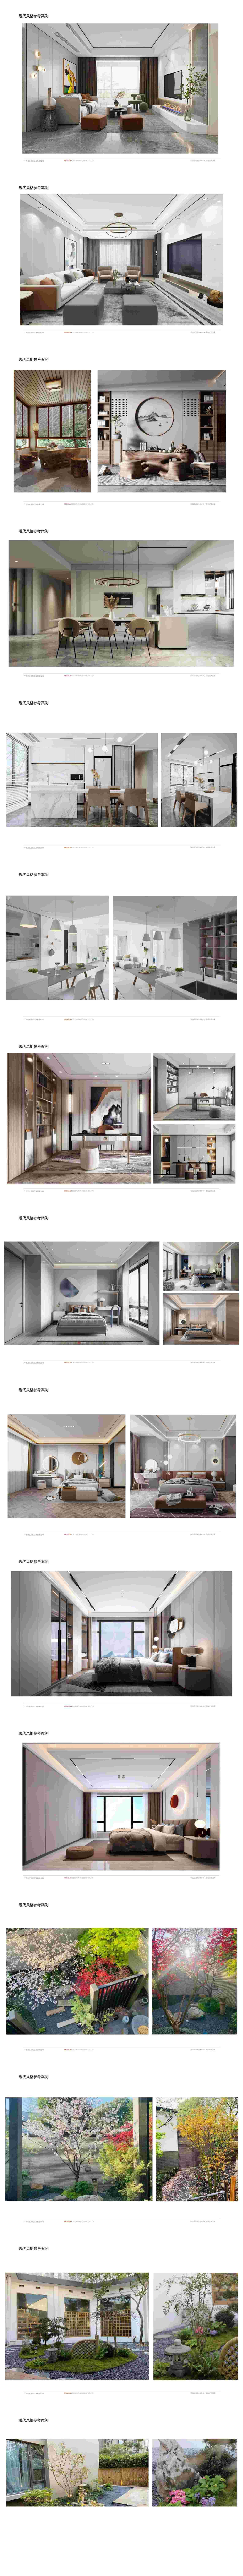 南寧華發國賓壹號15-2201室137㎡戶型設計方案解析